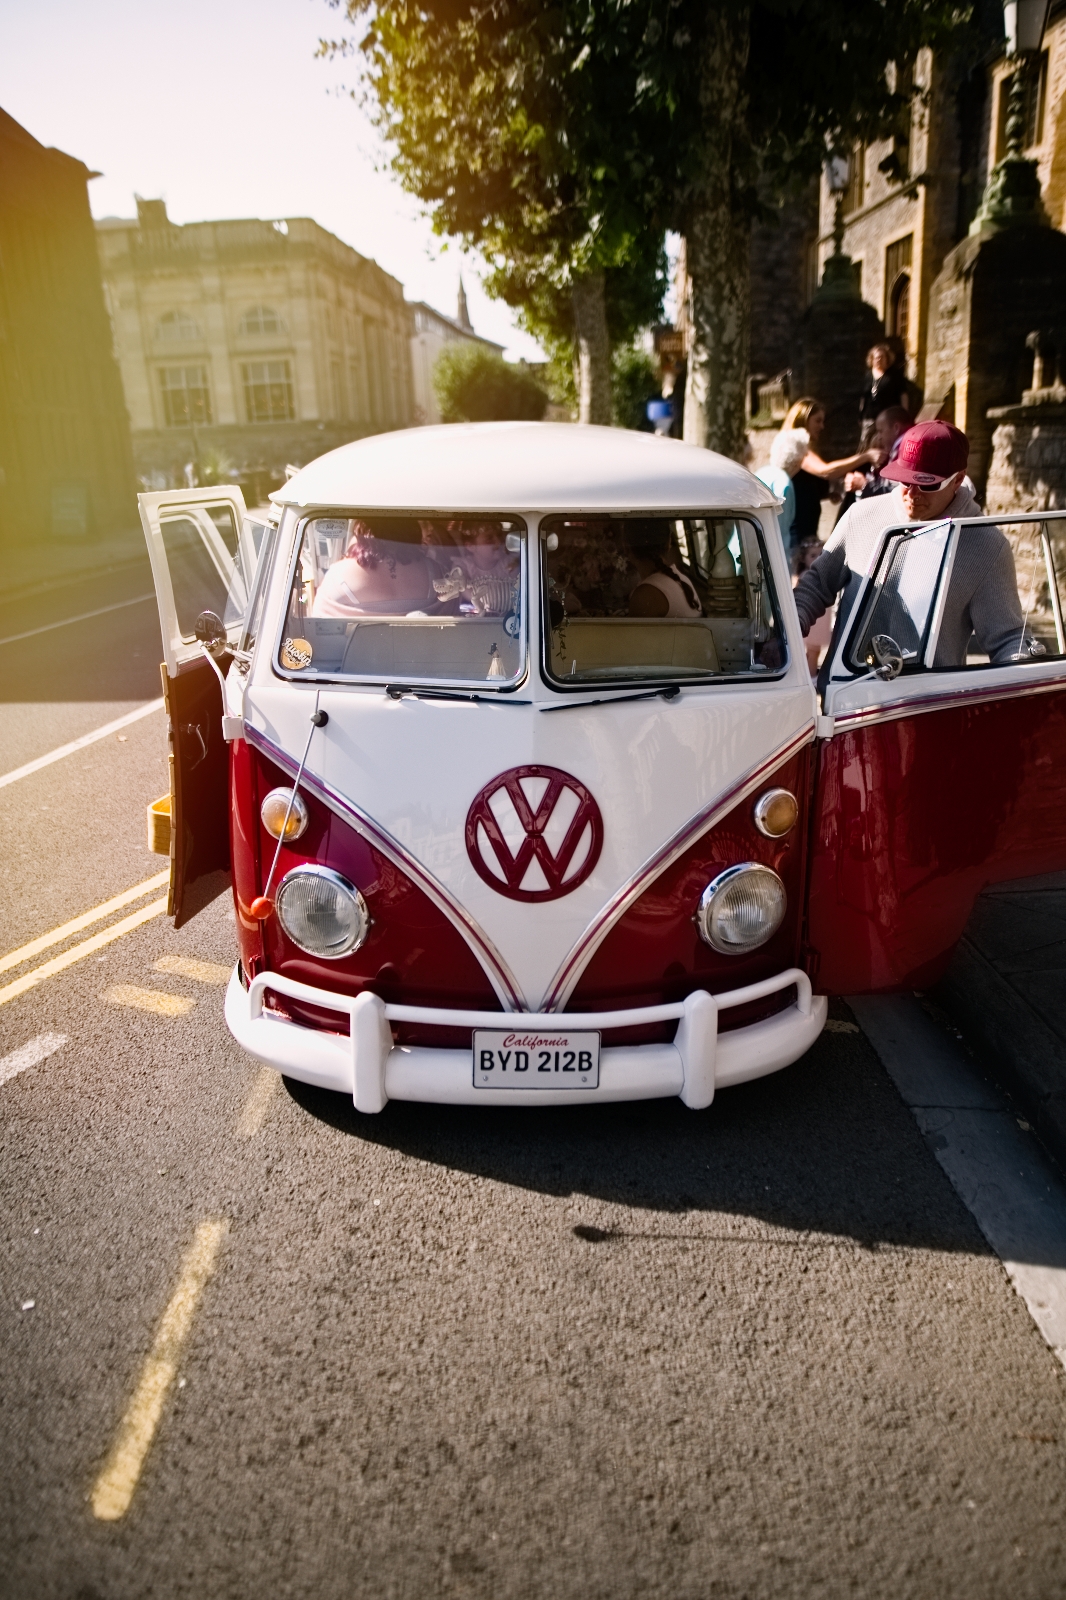 red Volkswagen camper van in urban town